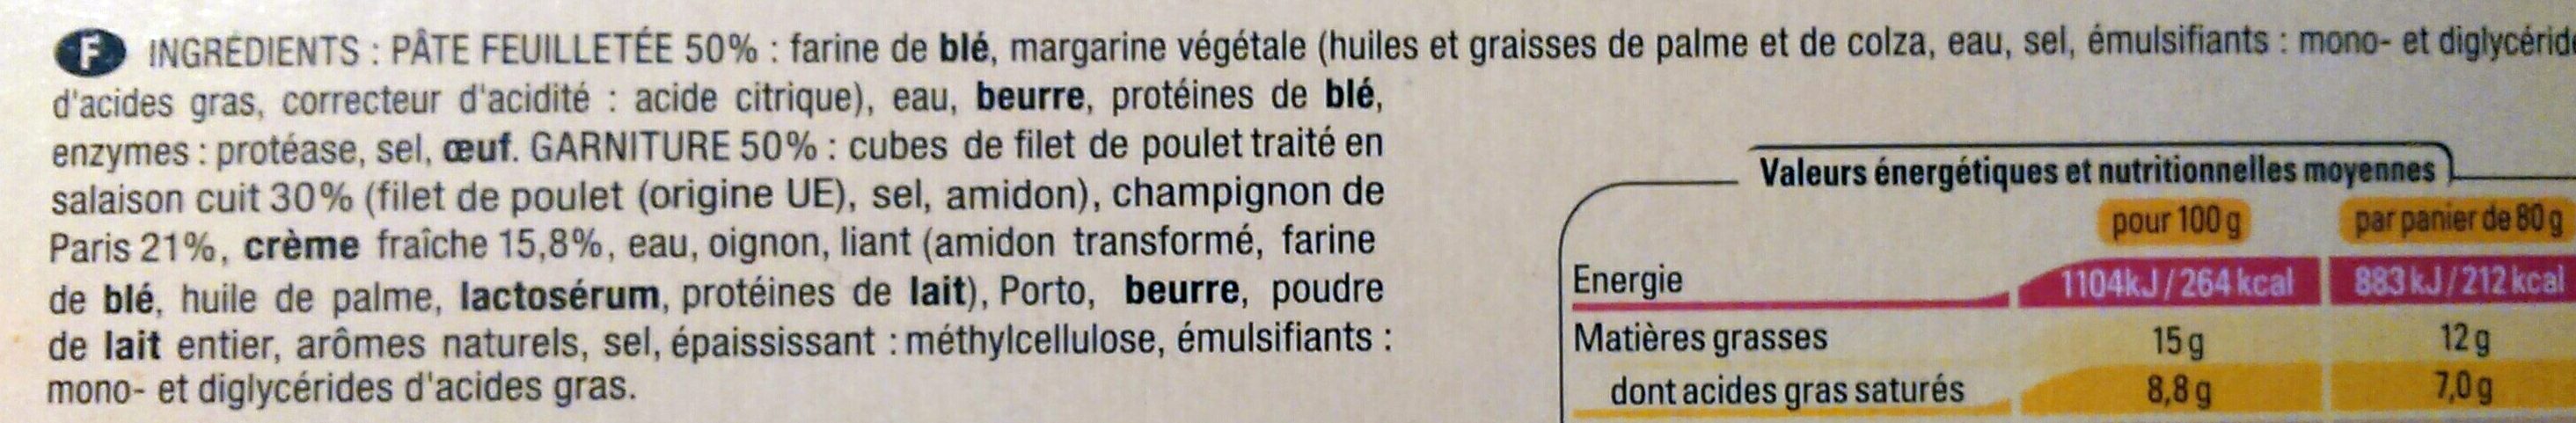 Panier Poulet Champignon - Ingredients - fr